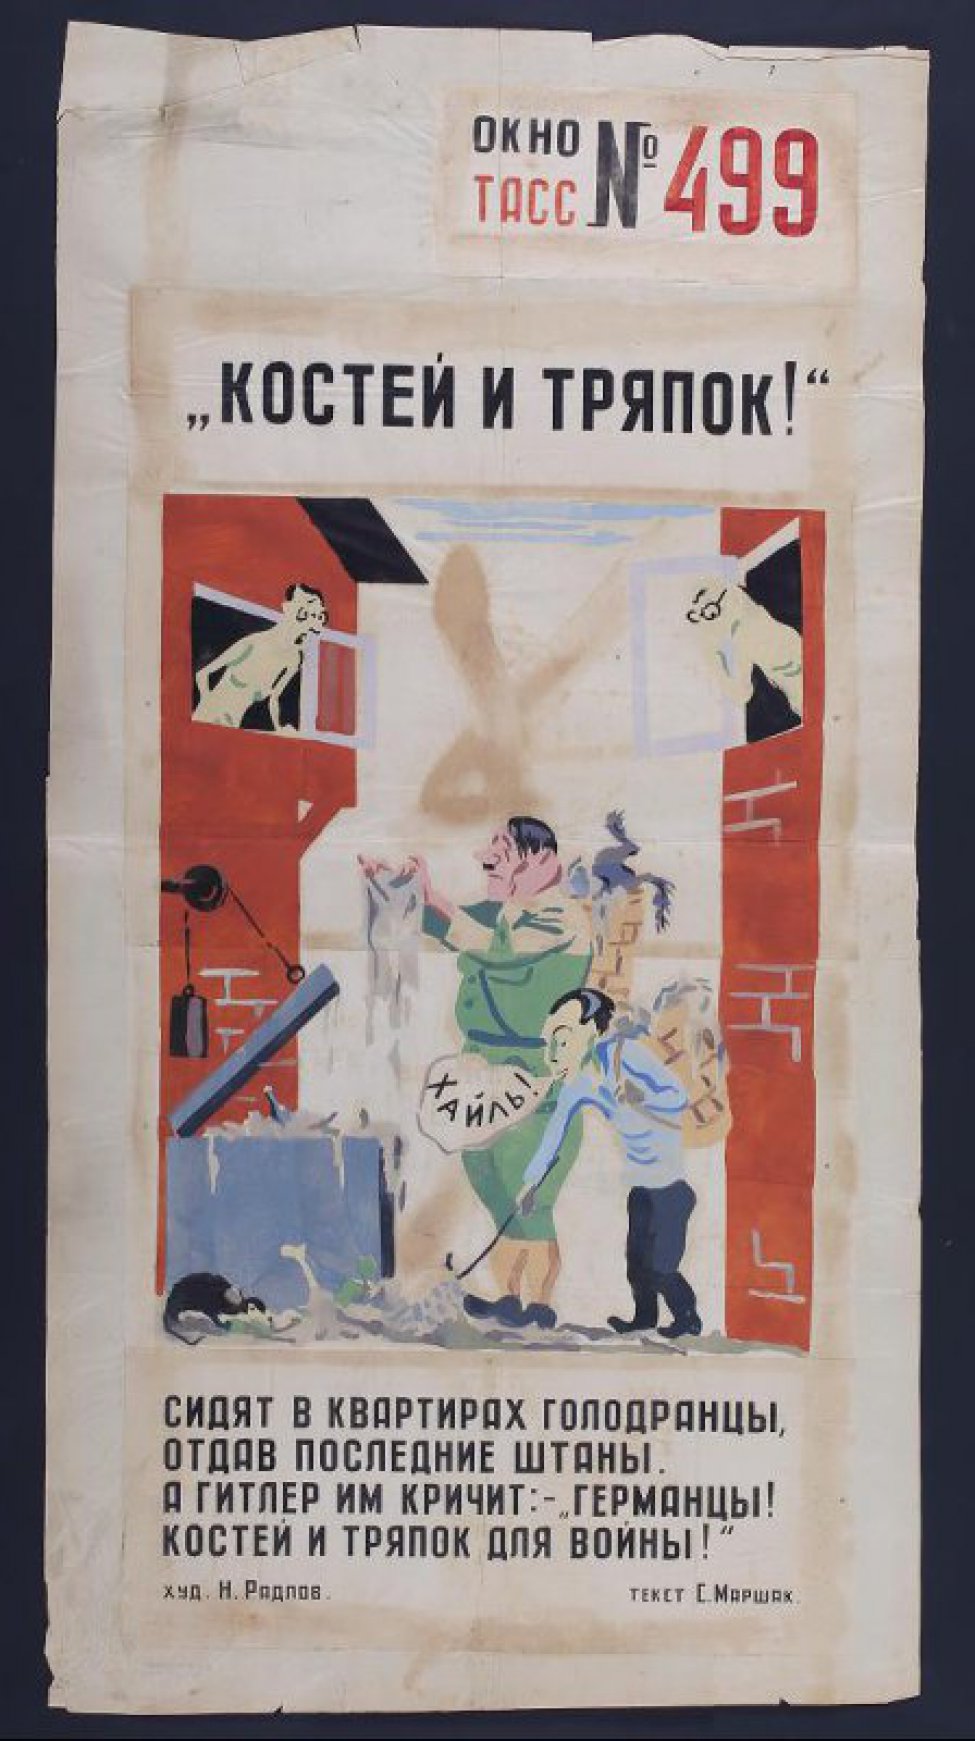 Рисунок изображает Гитлера и Геббельса с мешками за спиной у мусорного ящика. По сторонам из окон домов выглядывают обнаженные люди, текст:" Сидят в квартирах голодранцы, отдав последние штаны,..."